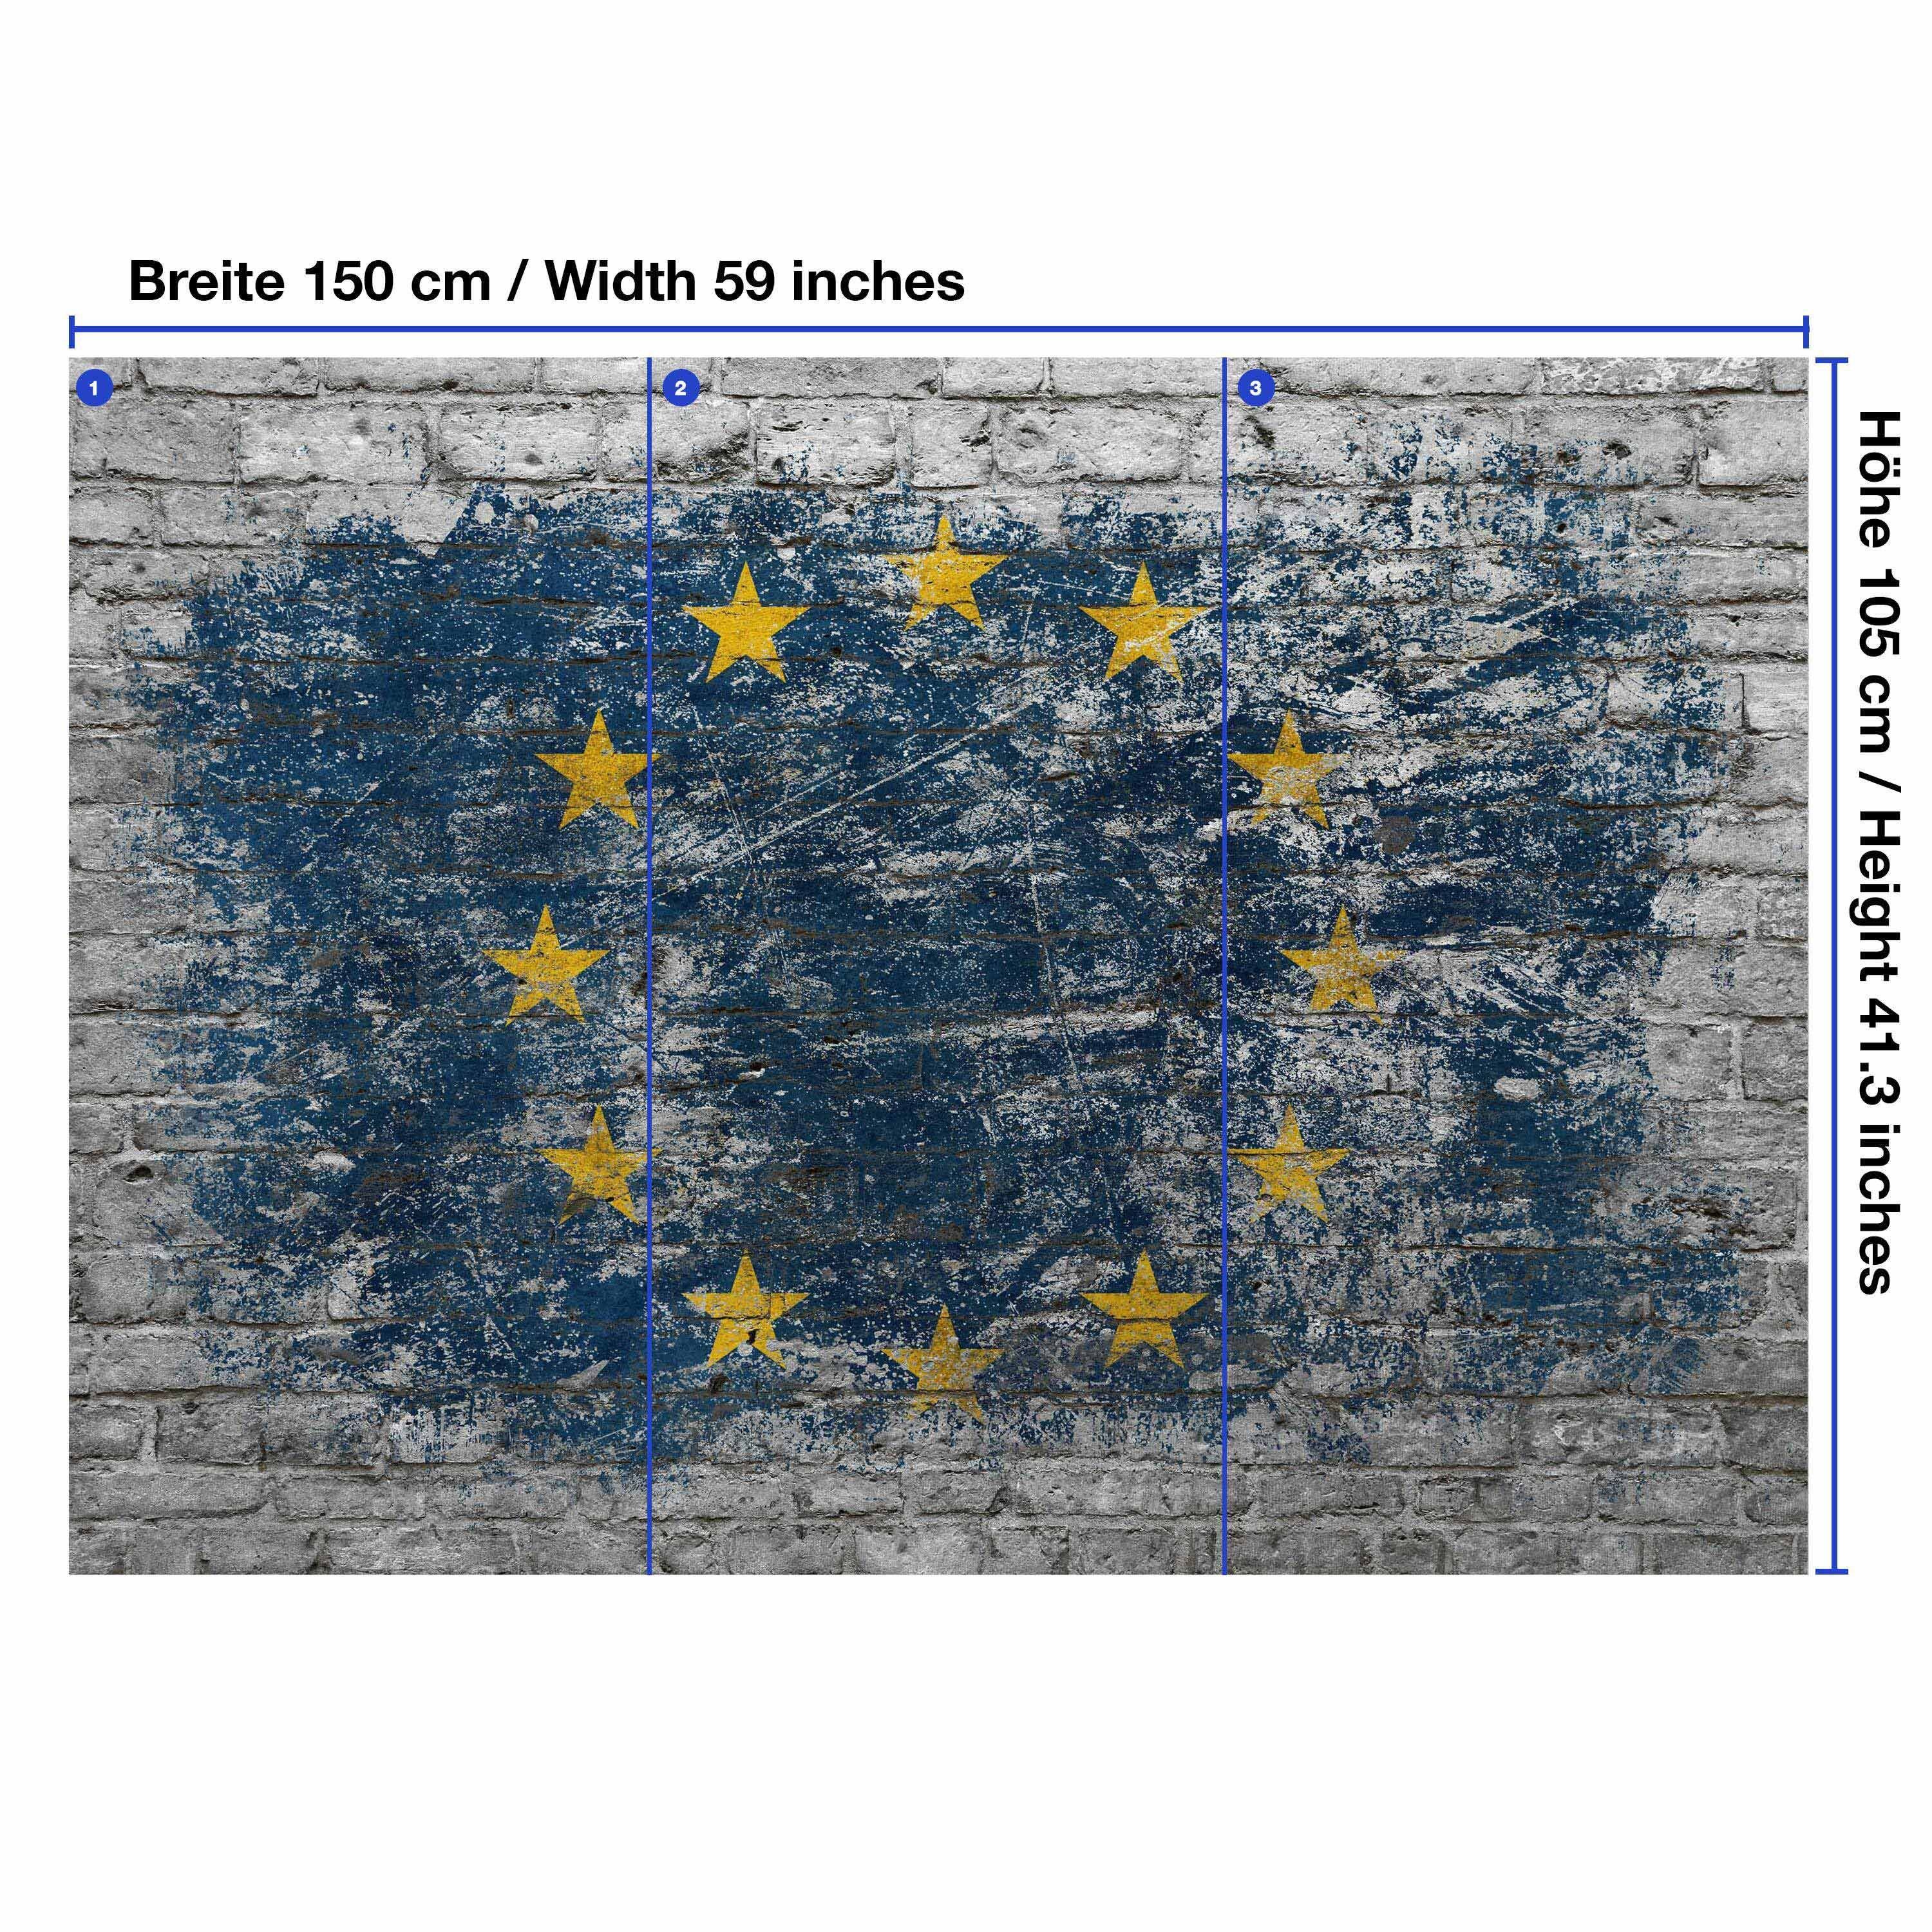 wandmotiv24 Fototapete Flagge Ziegelwand EU, Motivtapete, matt, glatt, Wandtapete, Vliestapete